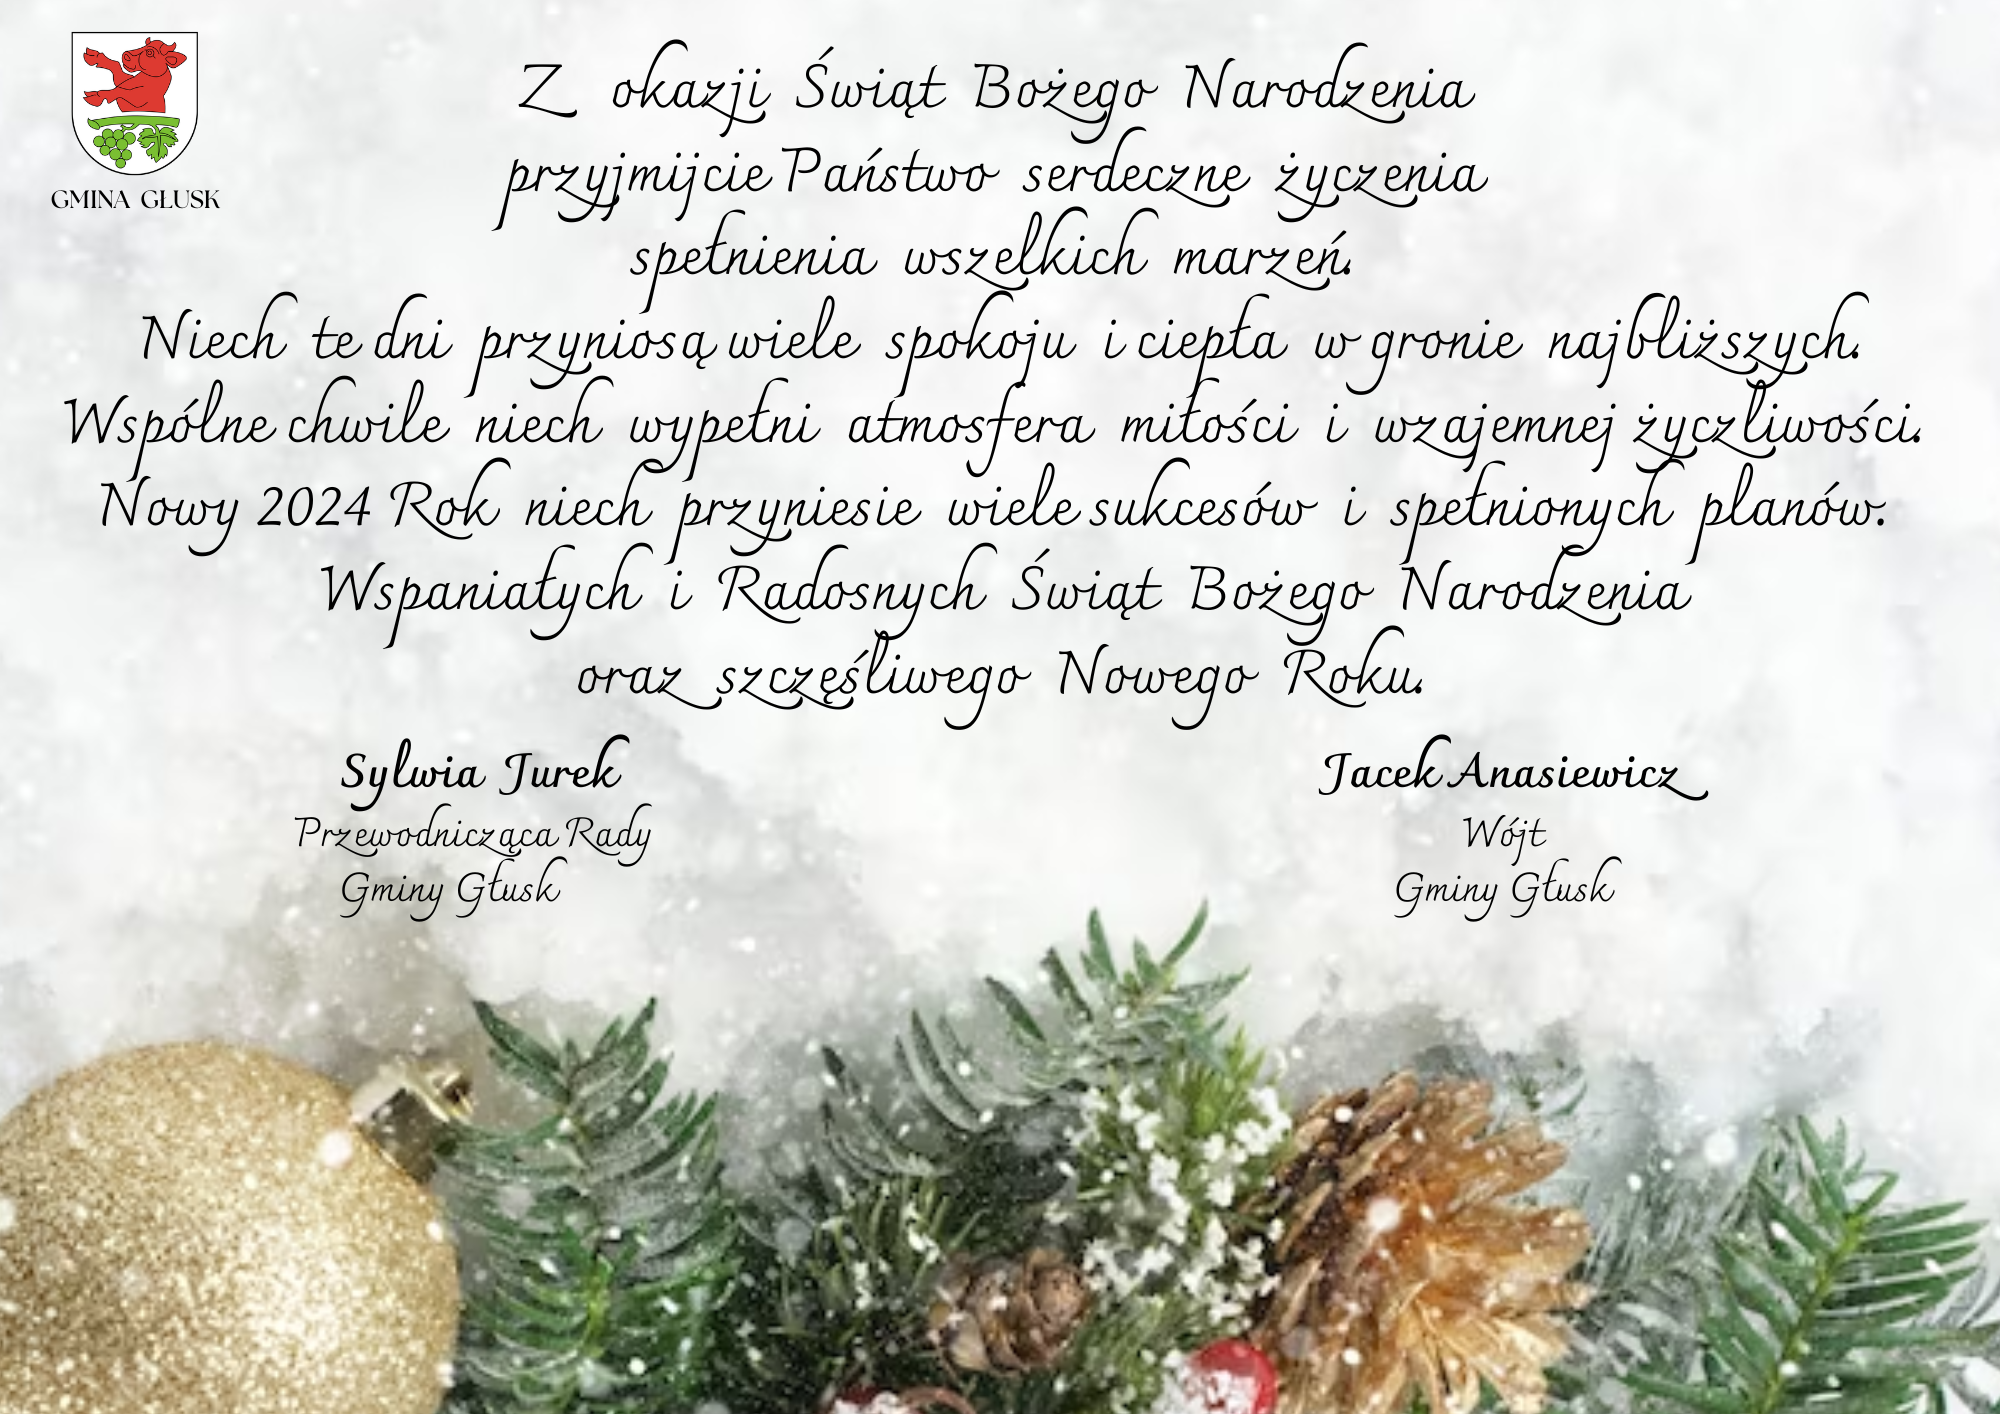 Zdjęcie przedstawia kartkę świąteczną z życzeniami. Na dole widać gałązkę choinkową oraz złotą bombkę, a w górnej części kartki tekst z życzeniami w języku polskim.